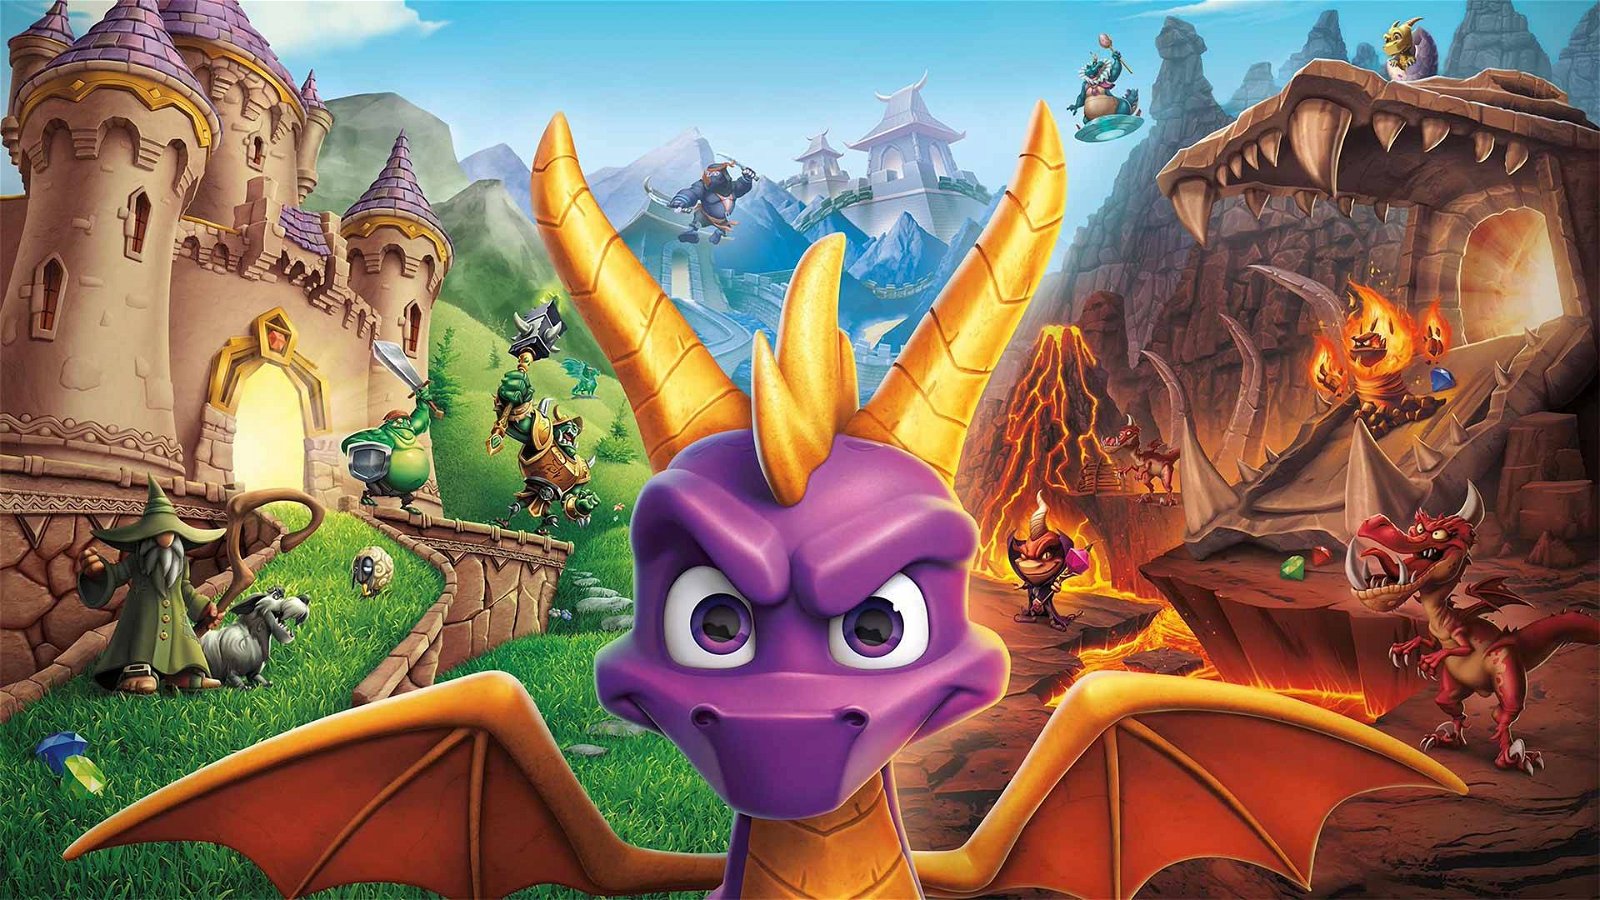 Immagine di Spyro Reignited Trilogy in arrivo su Nintendo Switch, secondo GameStop Germania